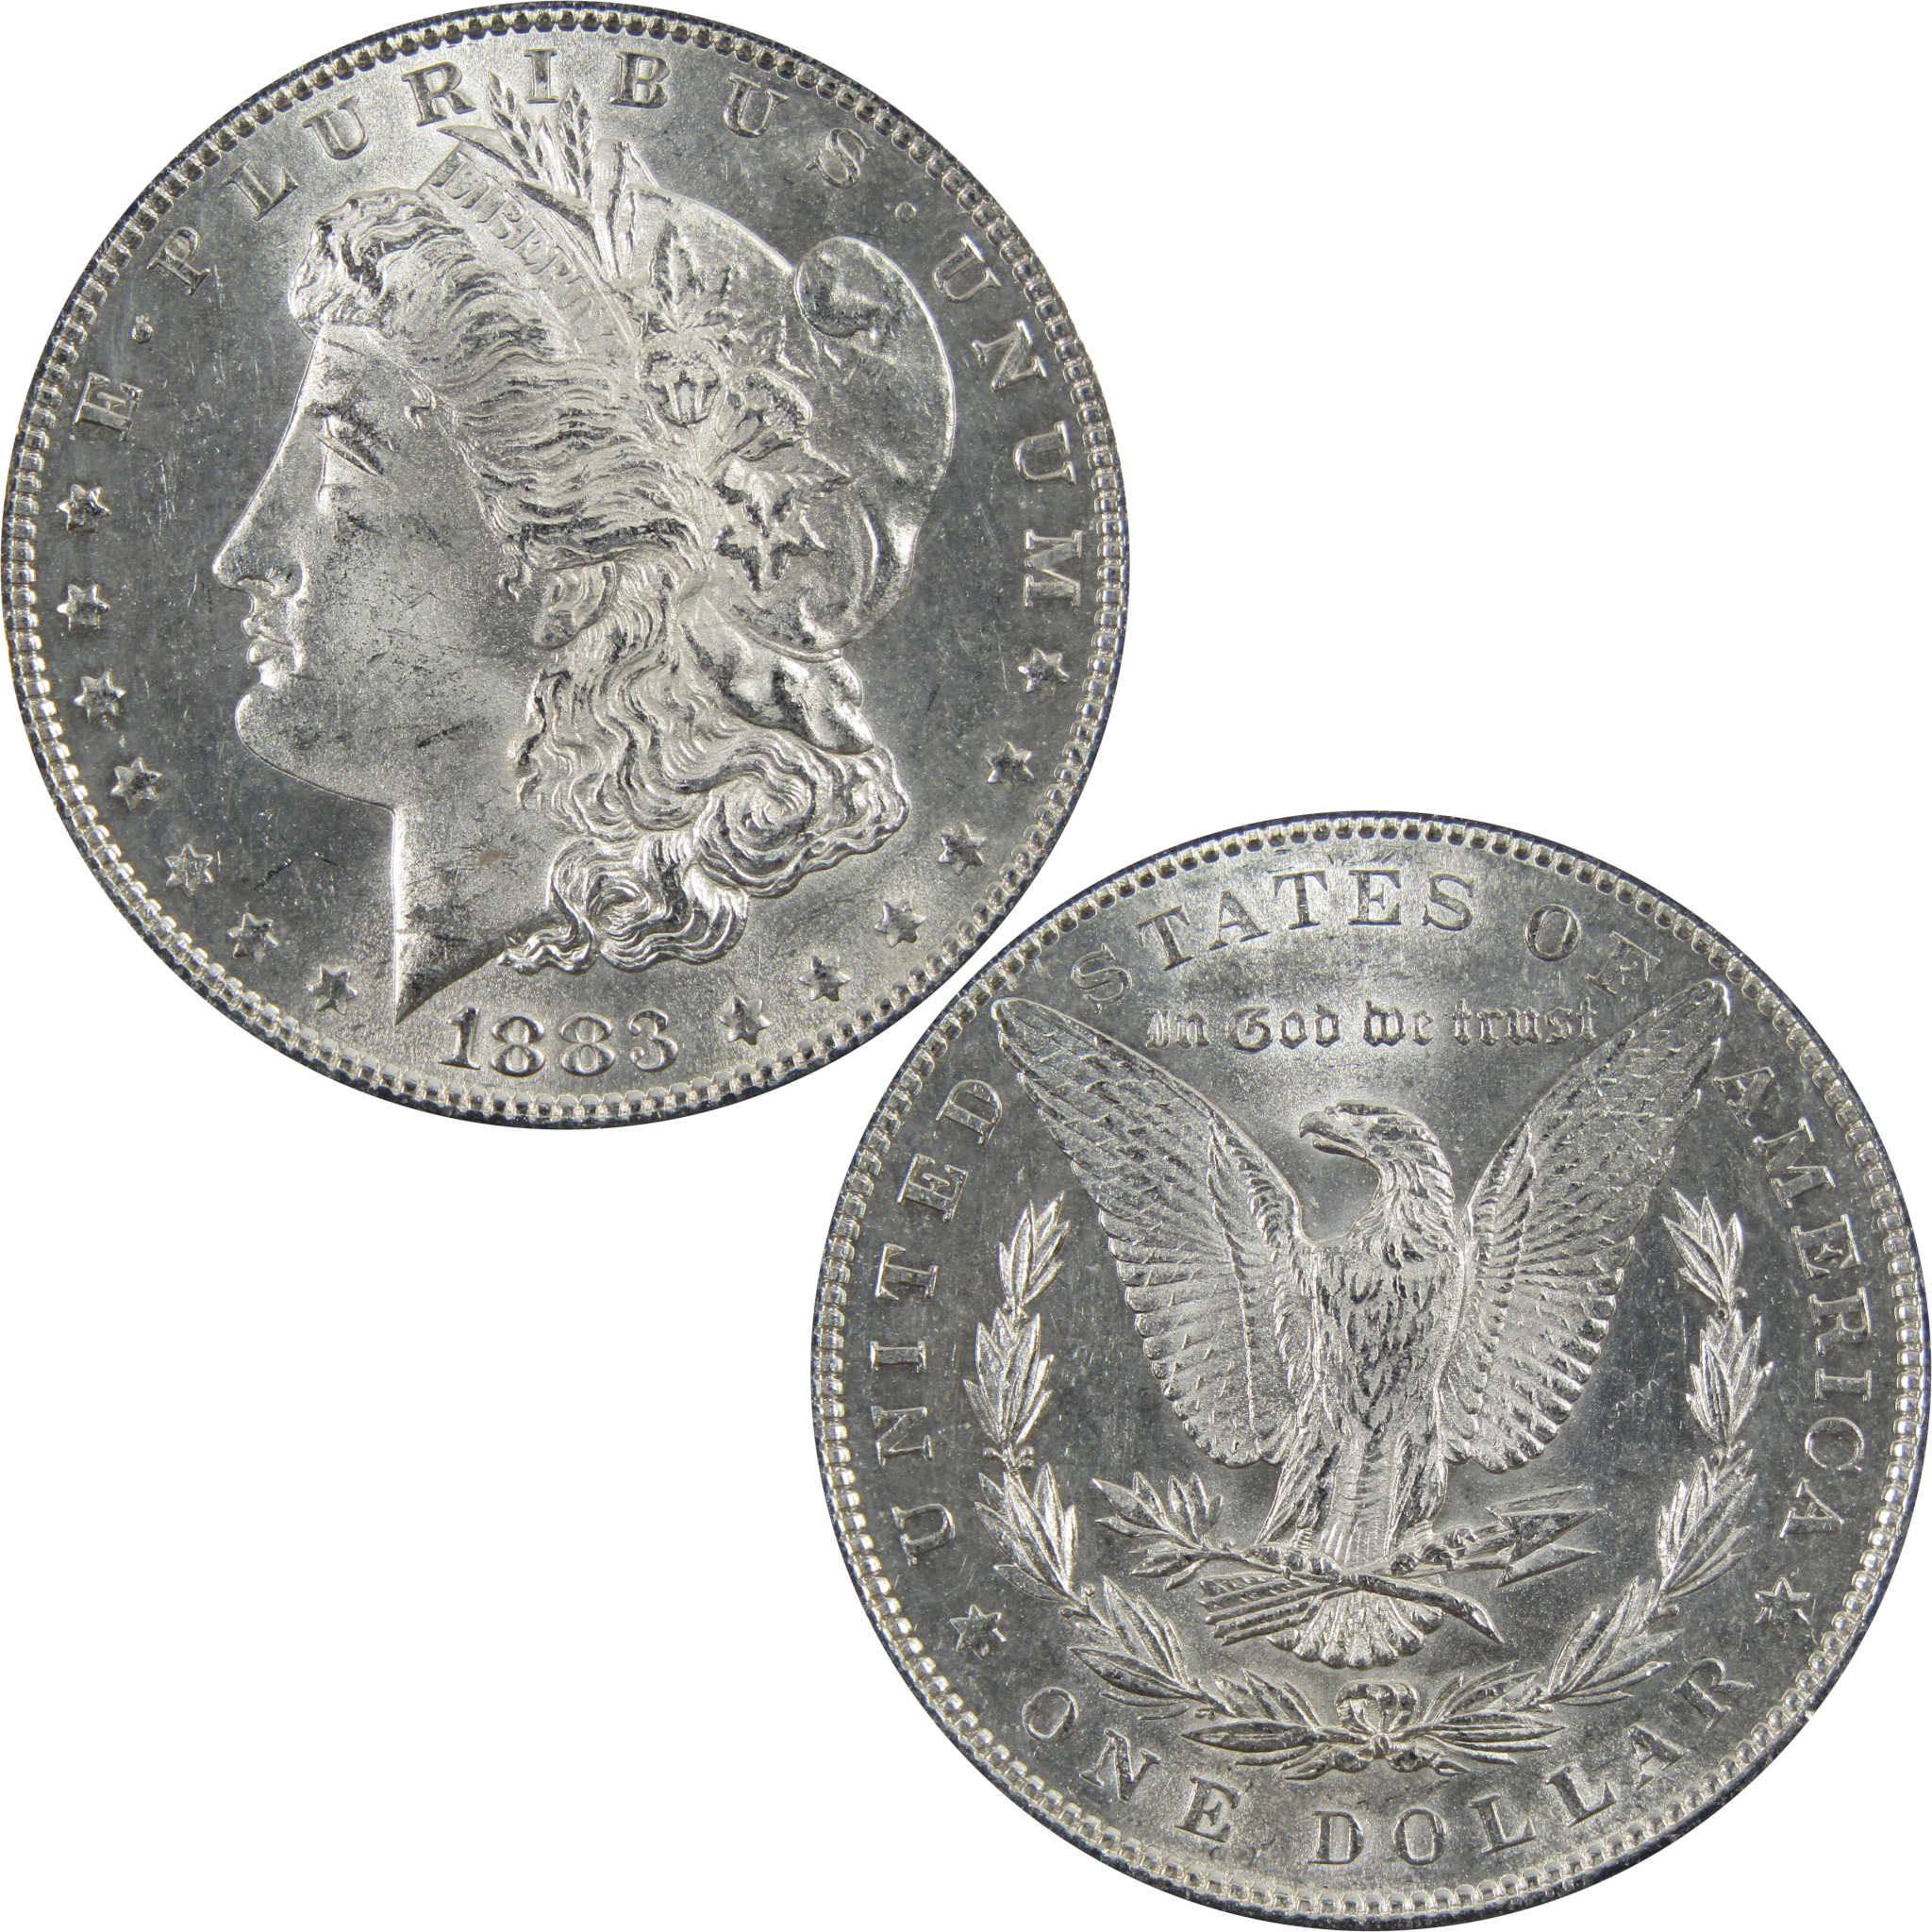 1883 Morgan Dollar BU Uncirculated 90% Silver $1 Coin SKU:I5166 - Morgan coin - Morgan silver dollar - Morgan silver dollar for sale - Profile Coins &amp; Collectibles